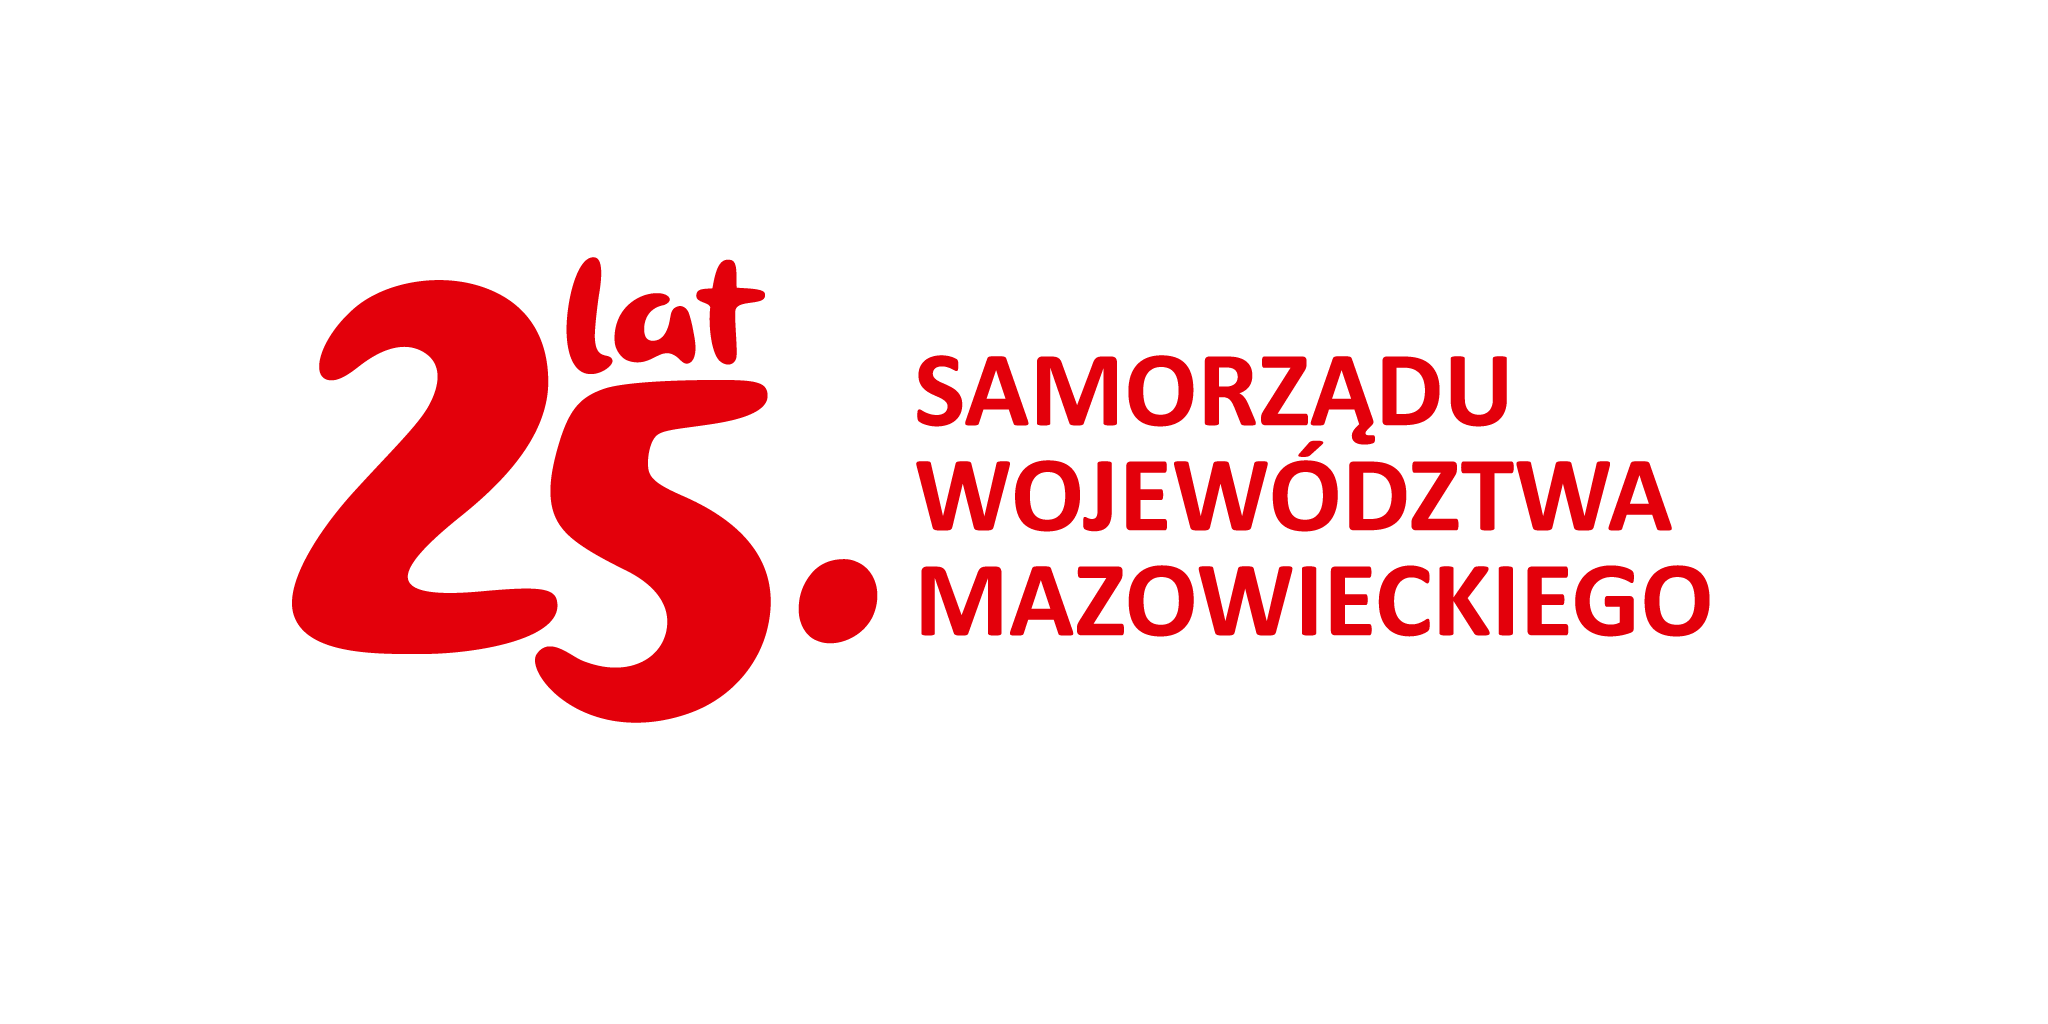 logo 25 lat samorządu województwa mazowieckiego